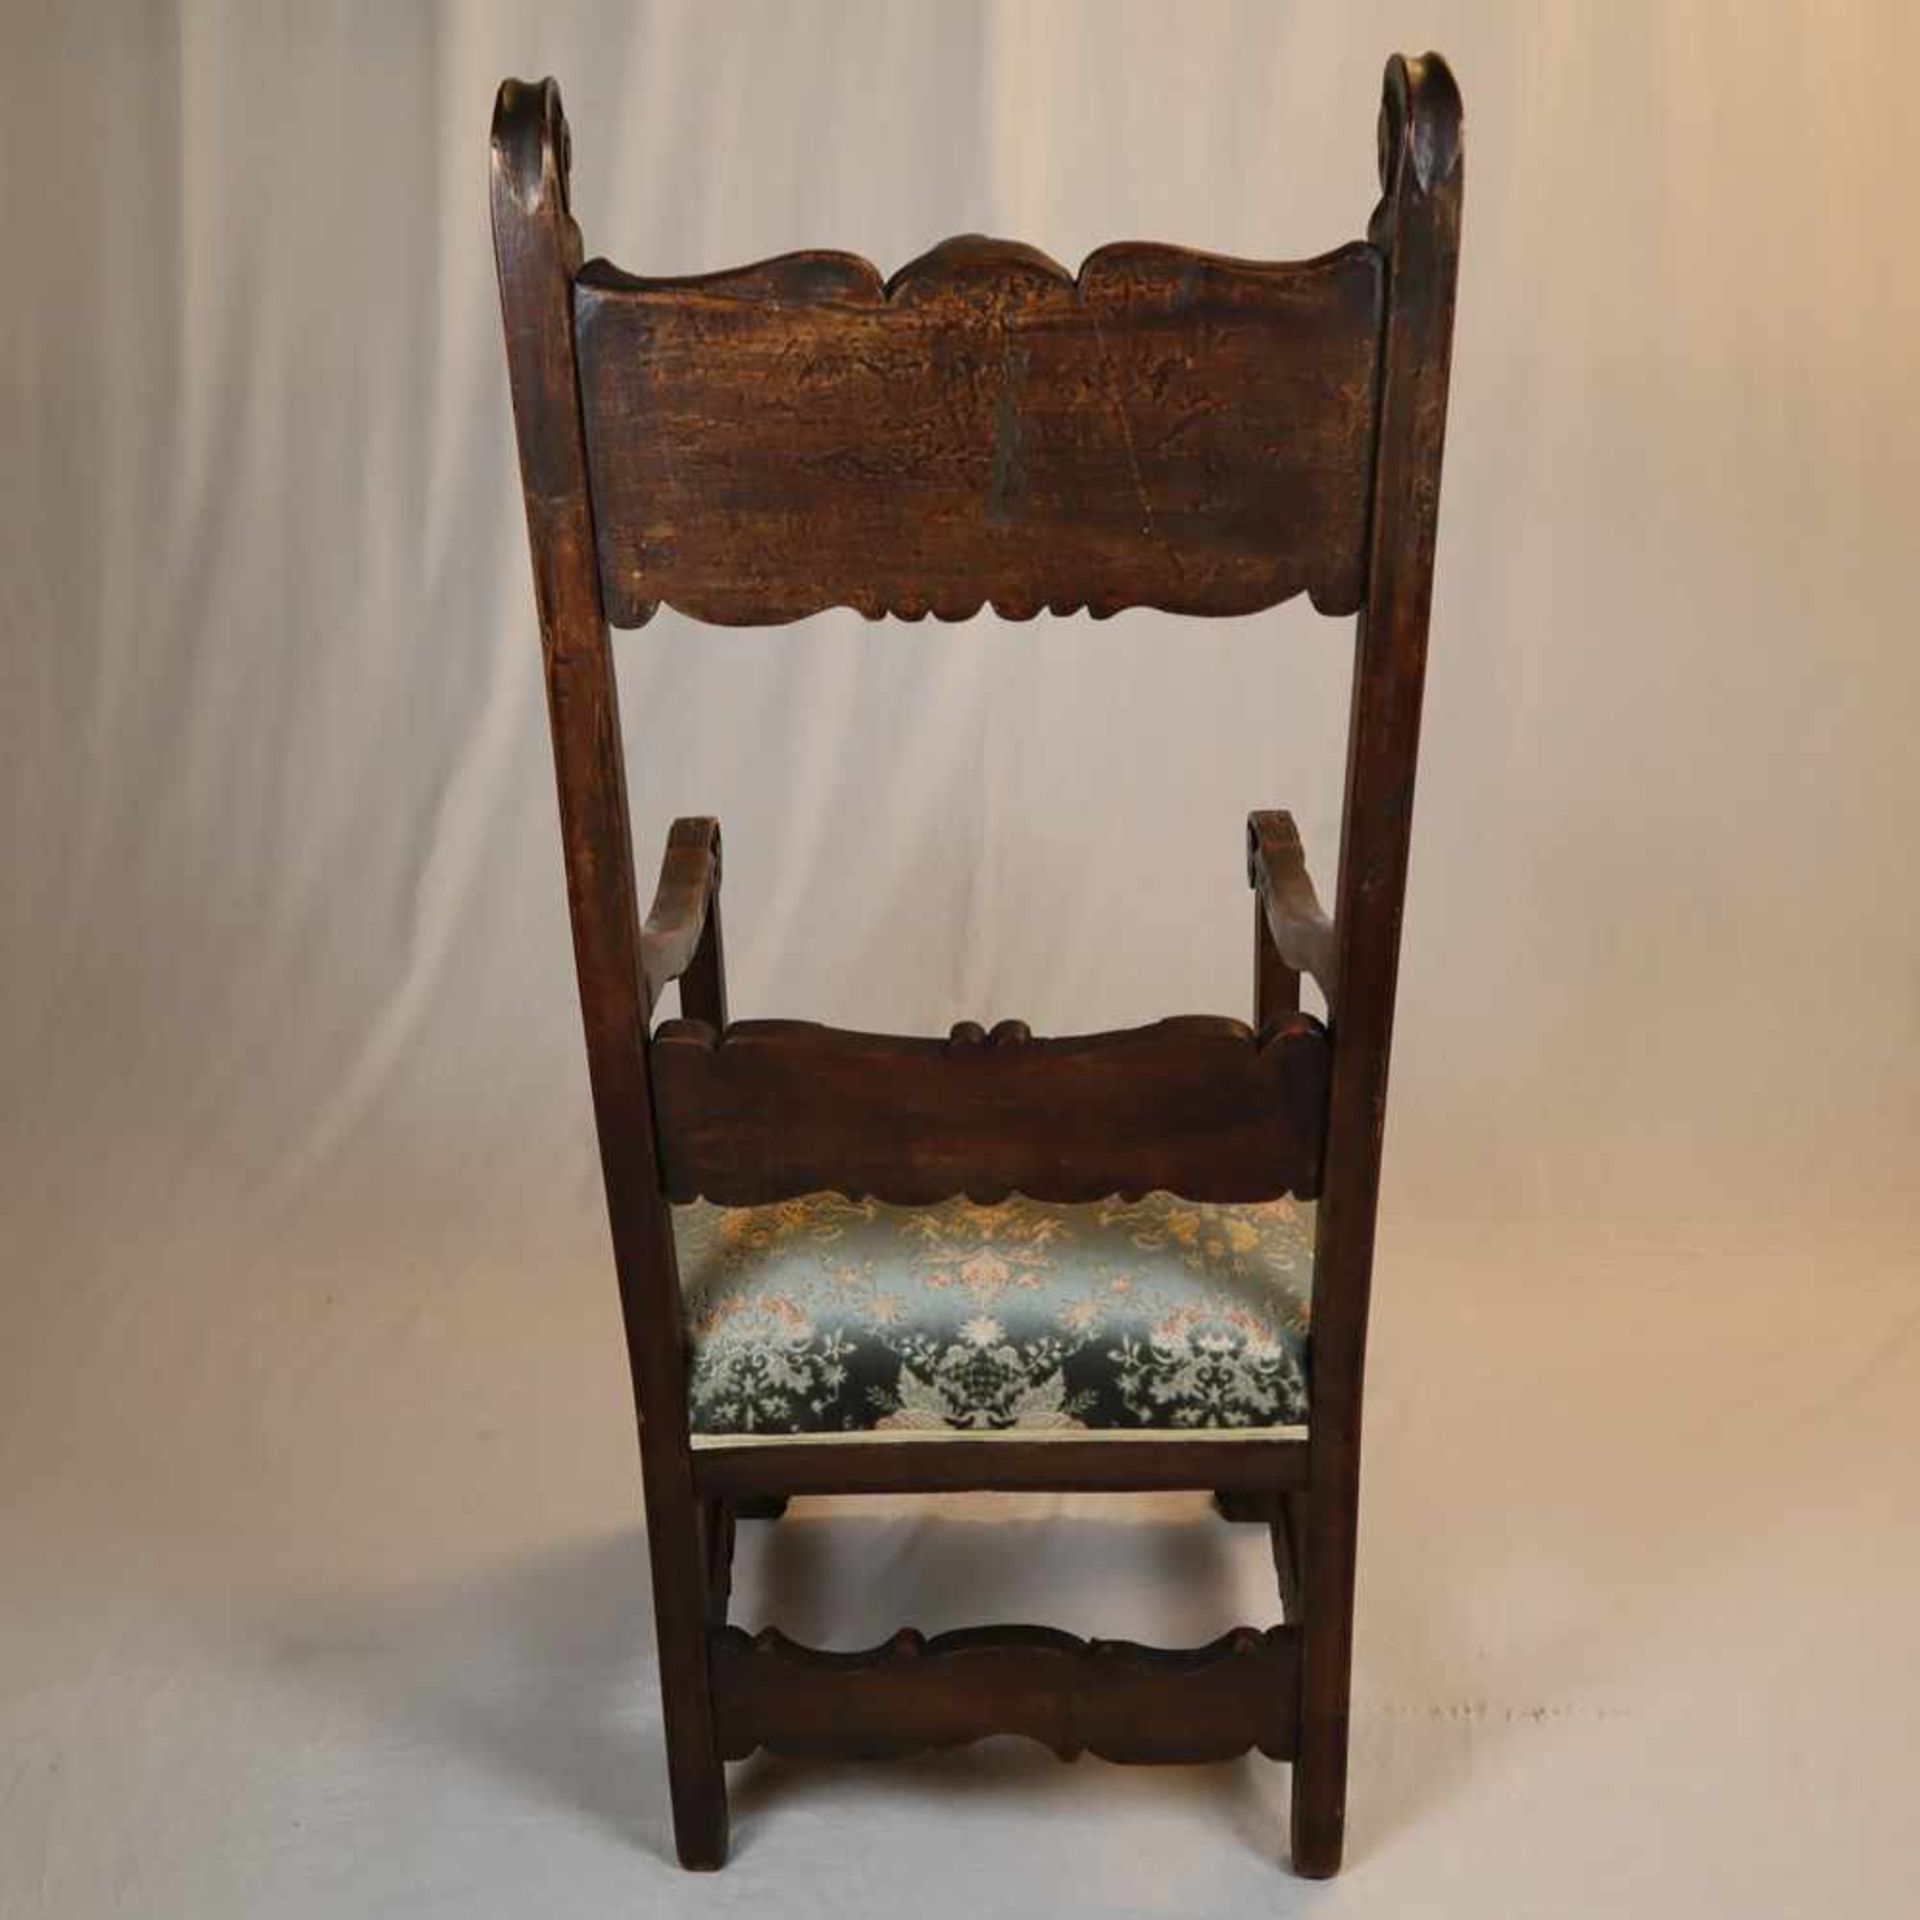 Abtsessel - historistischer Armlehnstuhl, Holz, reich beschnitzt mit Fabeltieren, Rankenwerk sowie - Bild 13 aus 15